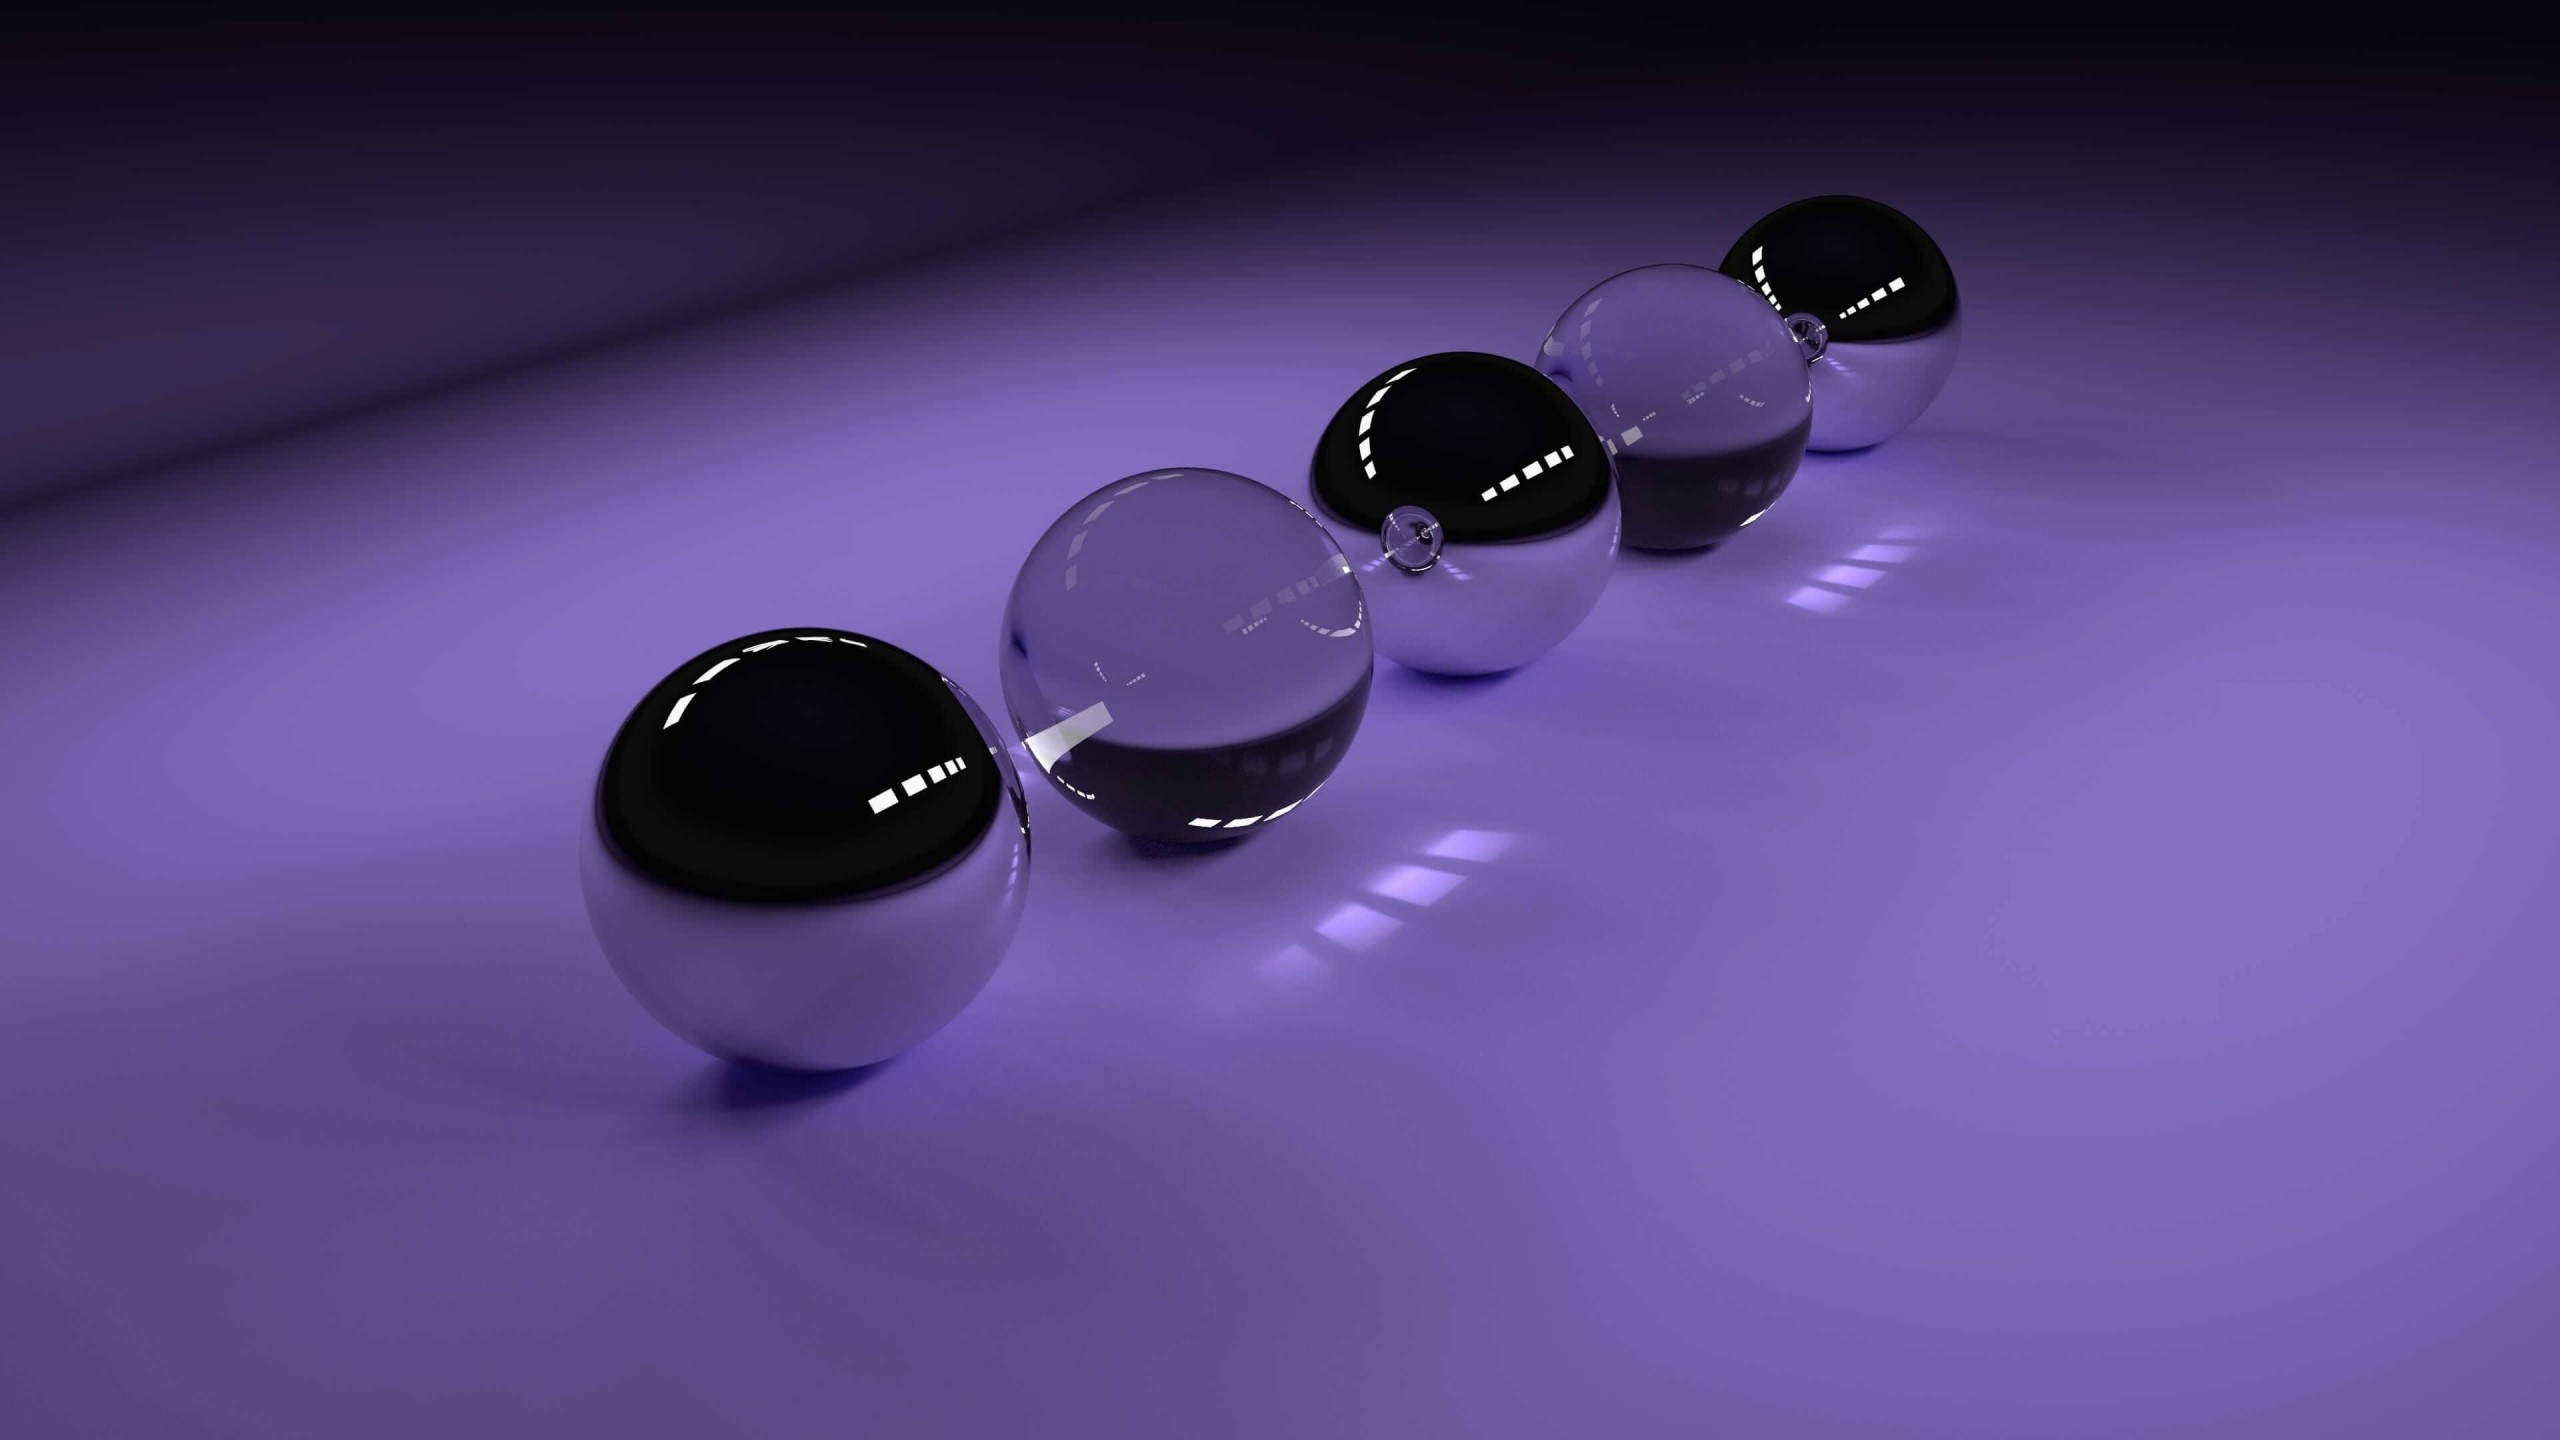 3D Glossy Spheres Wallpaper for Social Media YouTube Channel Art